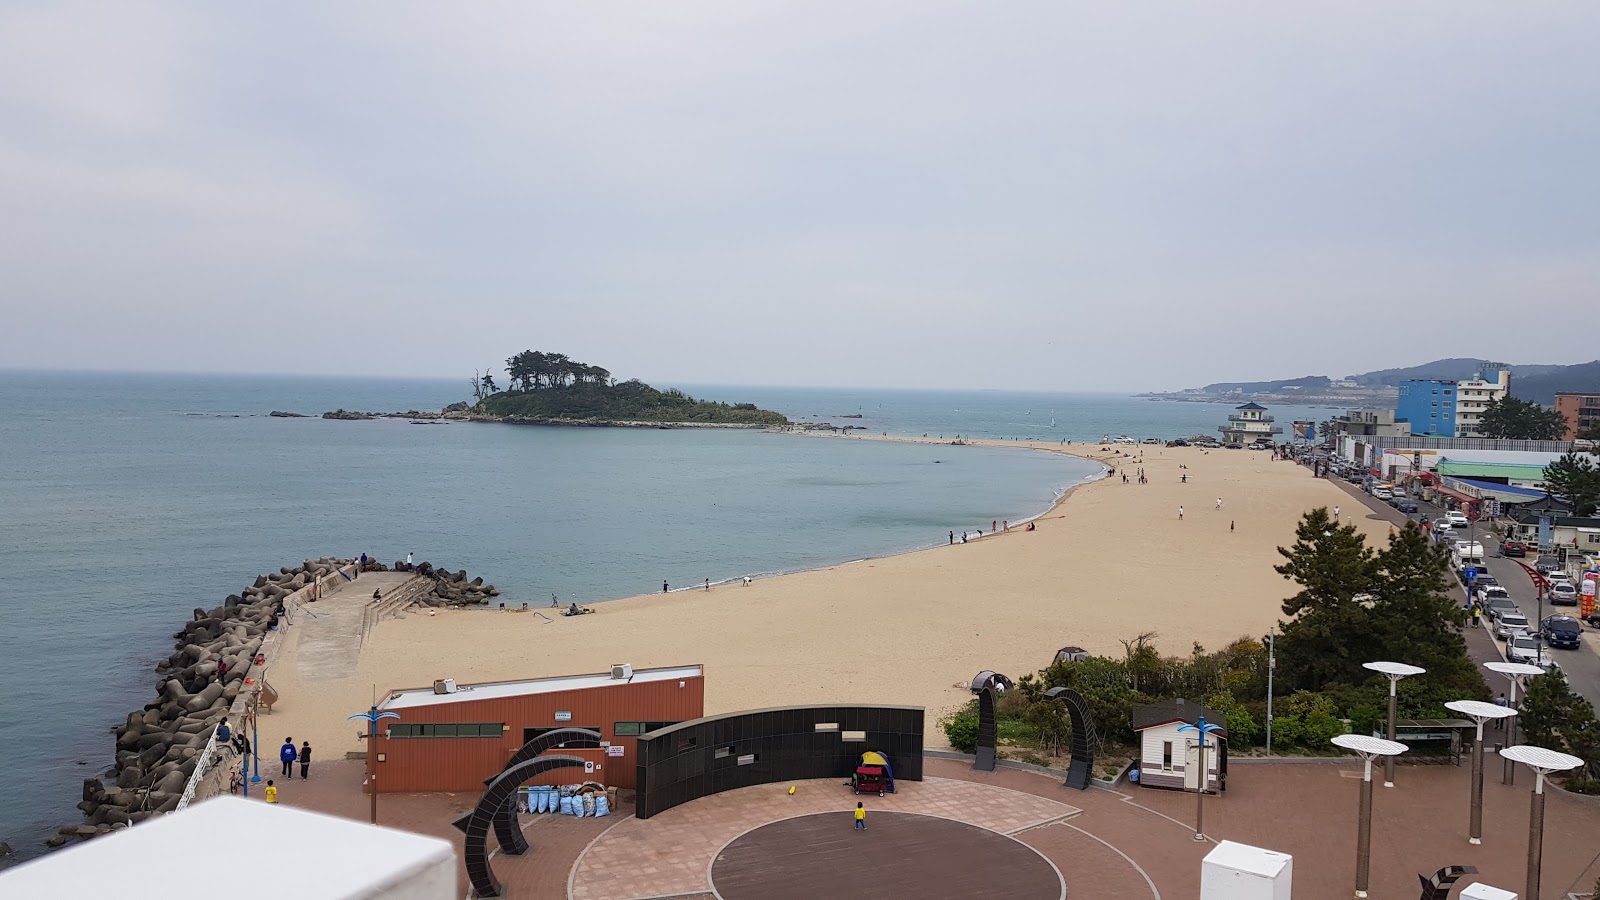 Zdjęcie Jinha Beach - popularne miejsce wśród znawców relaksu